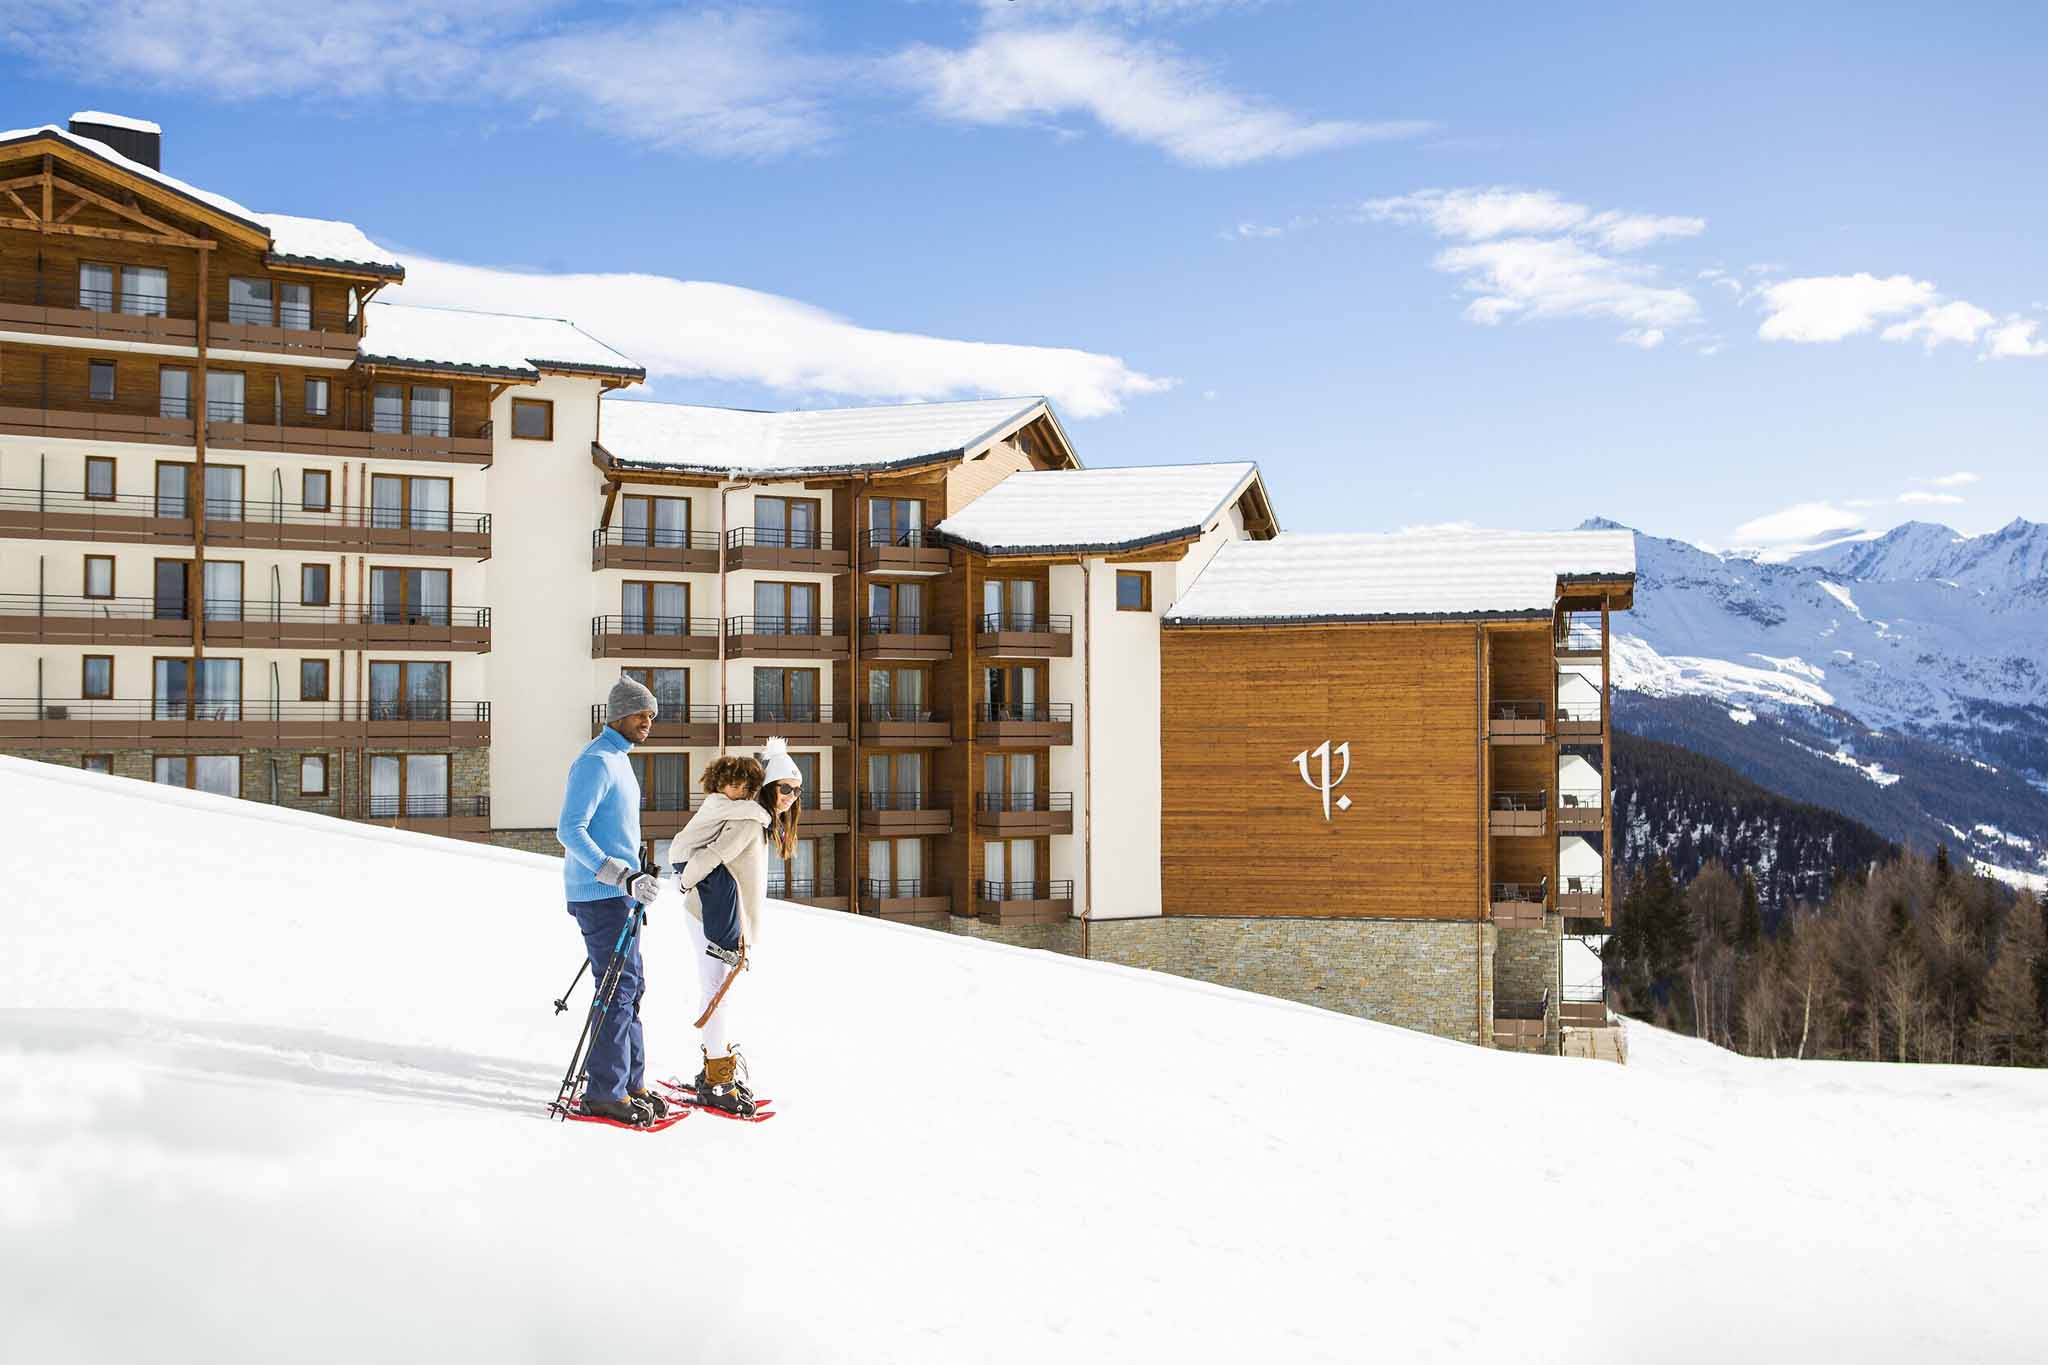 Vacances Ski Hotel Tout Compris Séjours Montagne Odysight Travel Experts